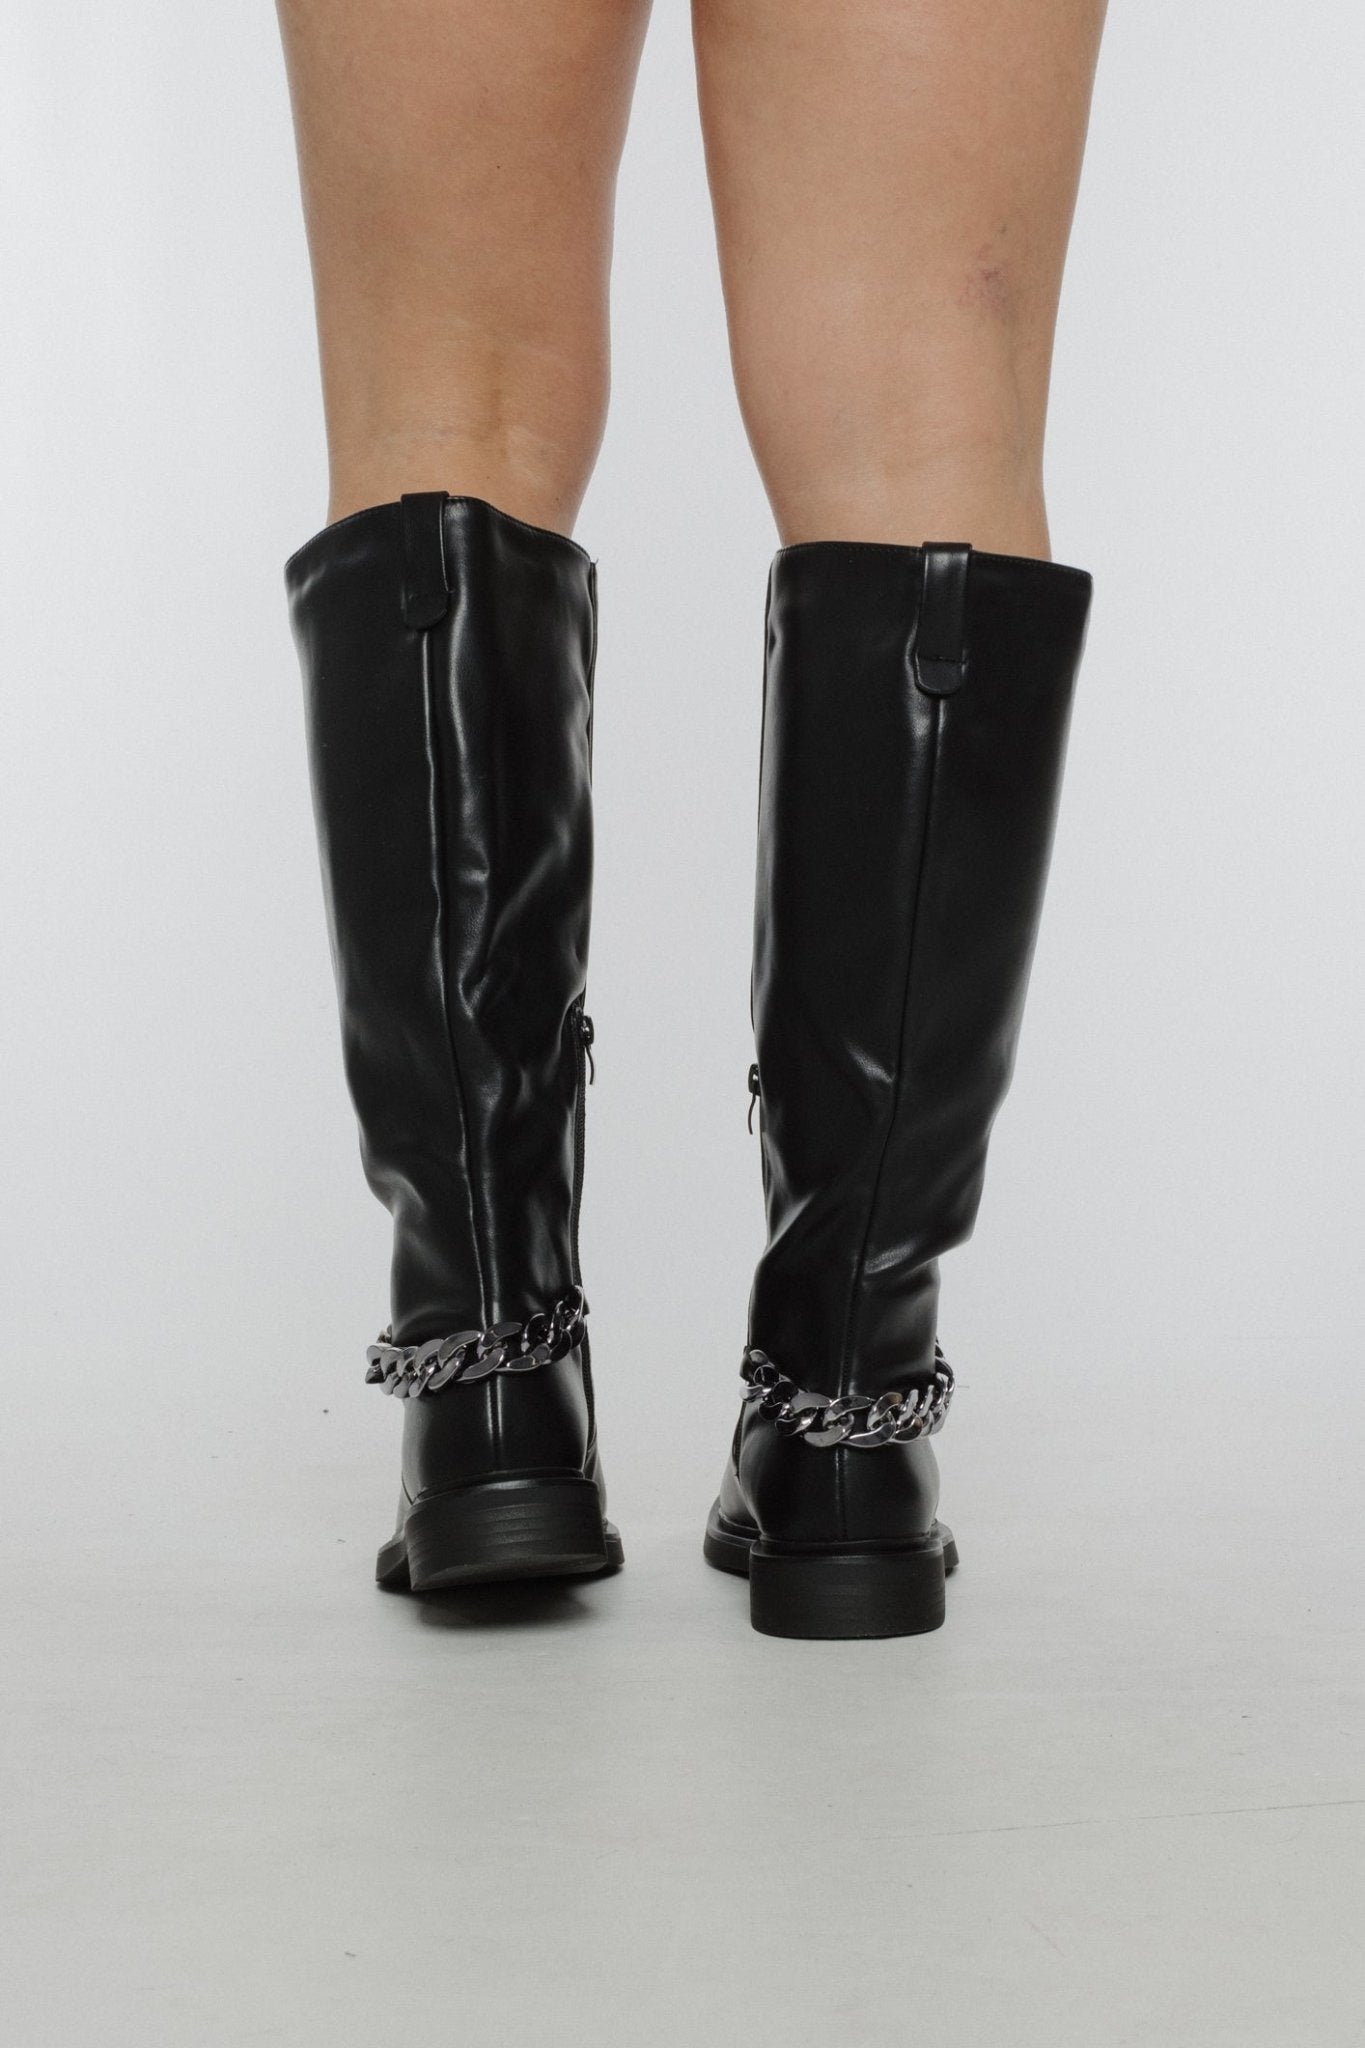 Izzy Chain Boot In Black - The Walk in Wardrobe